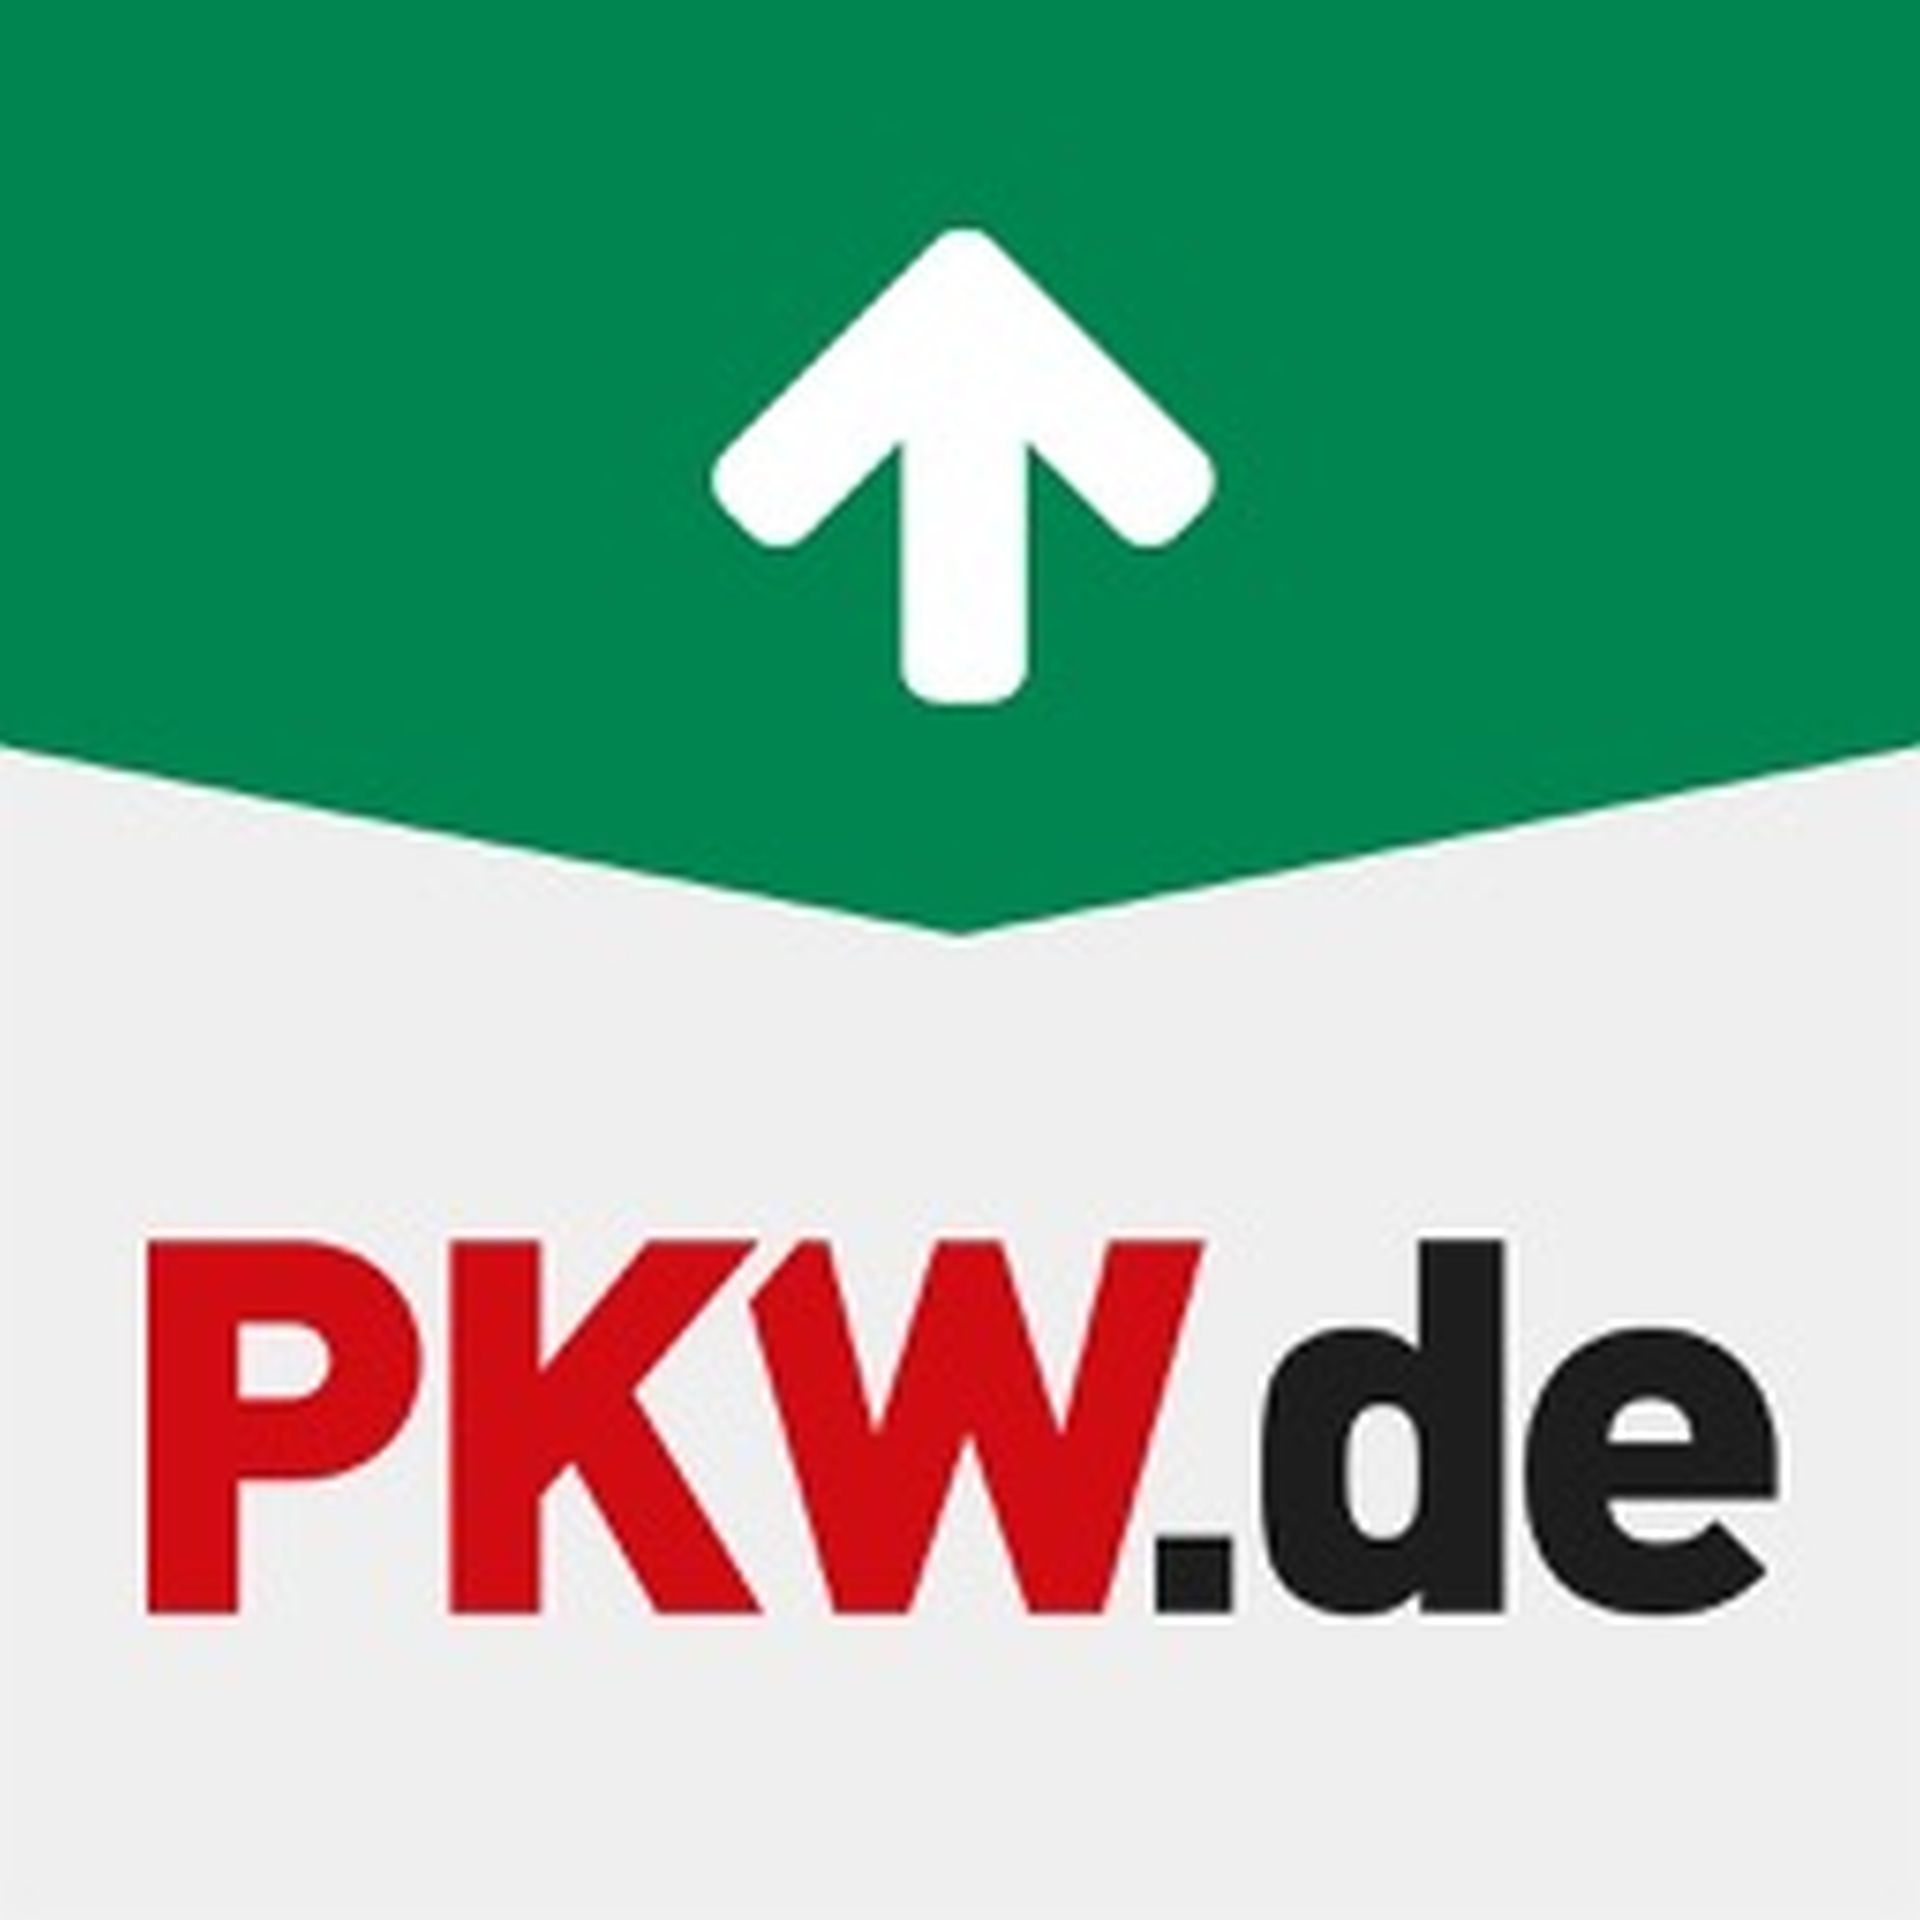 pkw.de